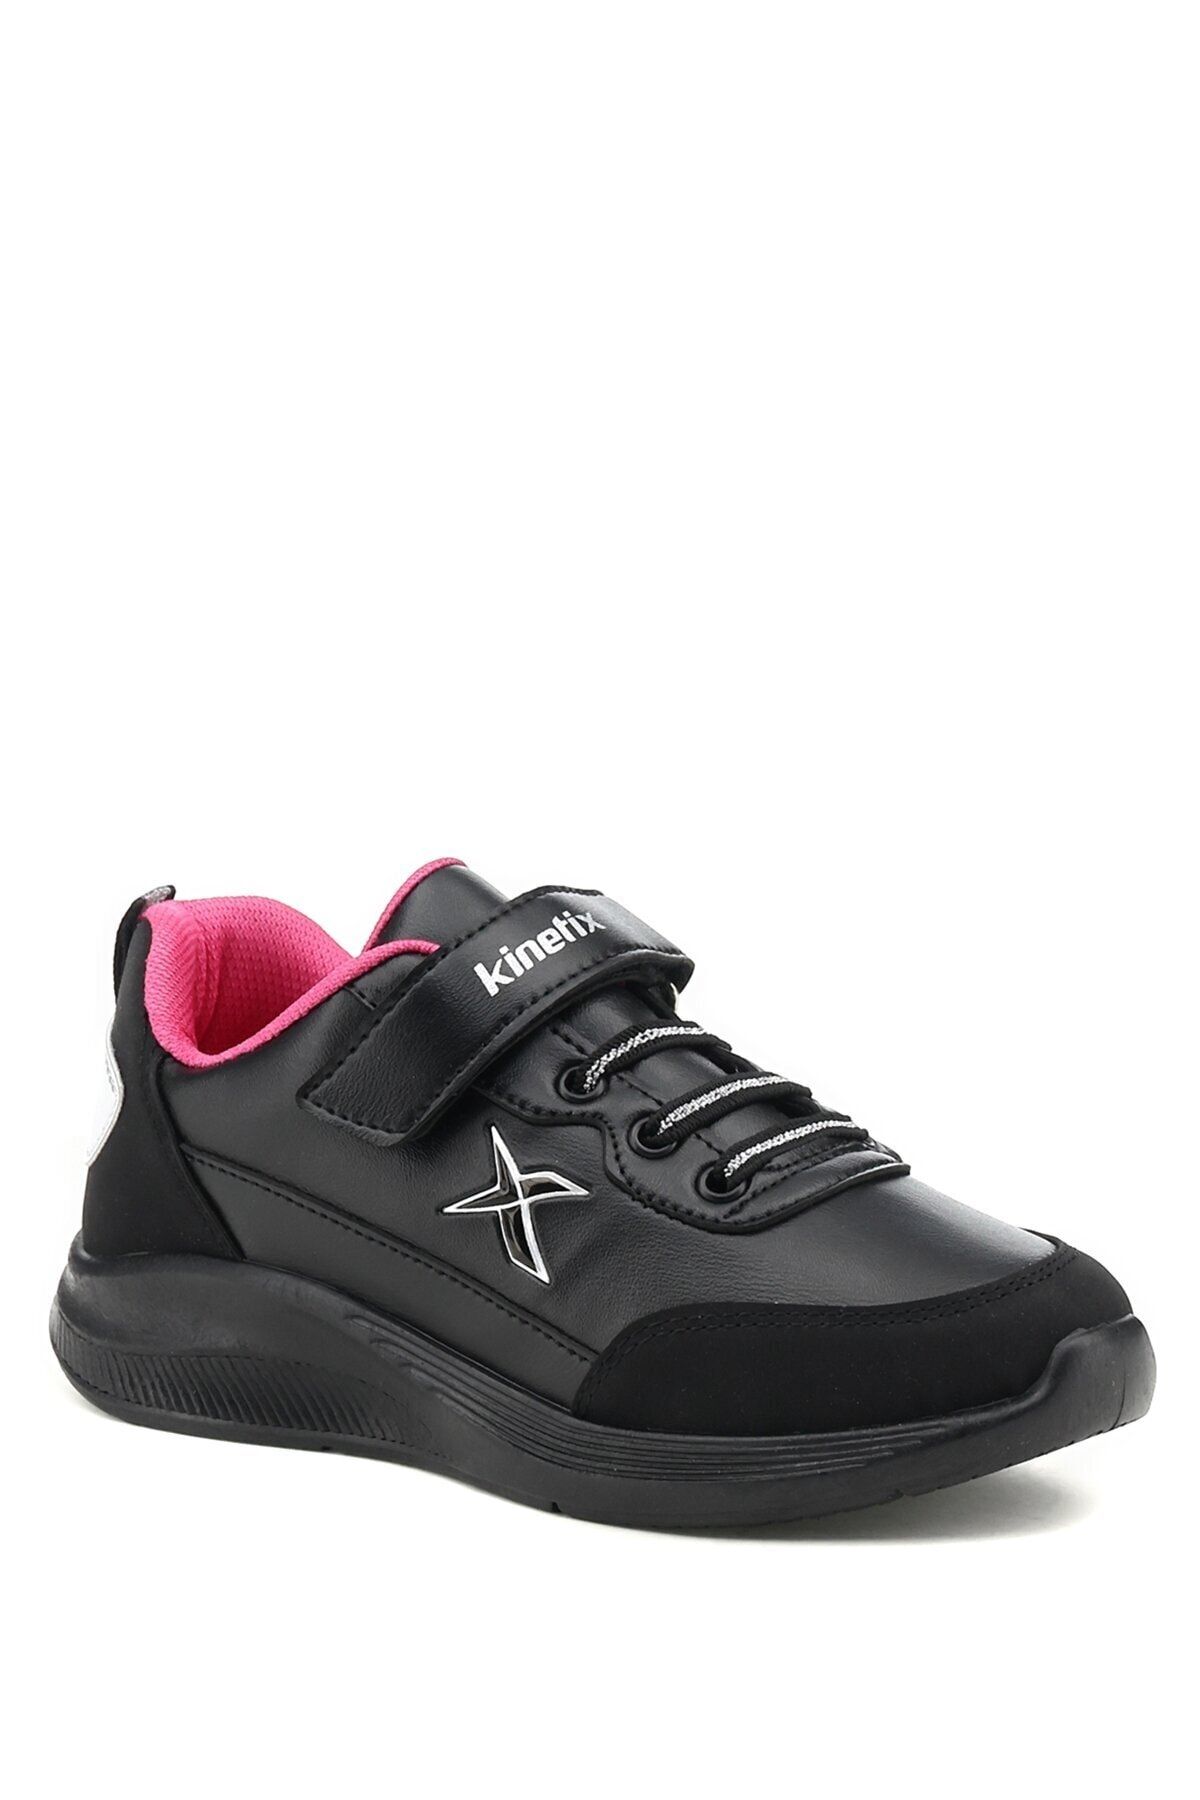 Kinetix Siyah Kız Çocuk Koşu Ayakkabısı